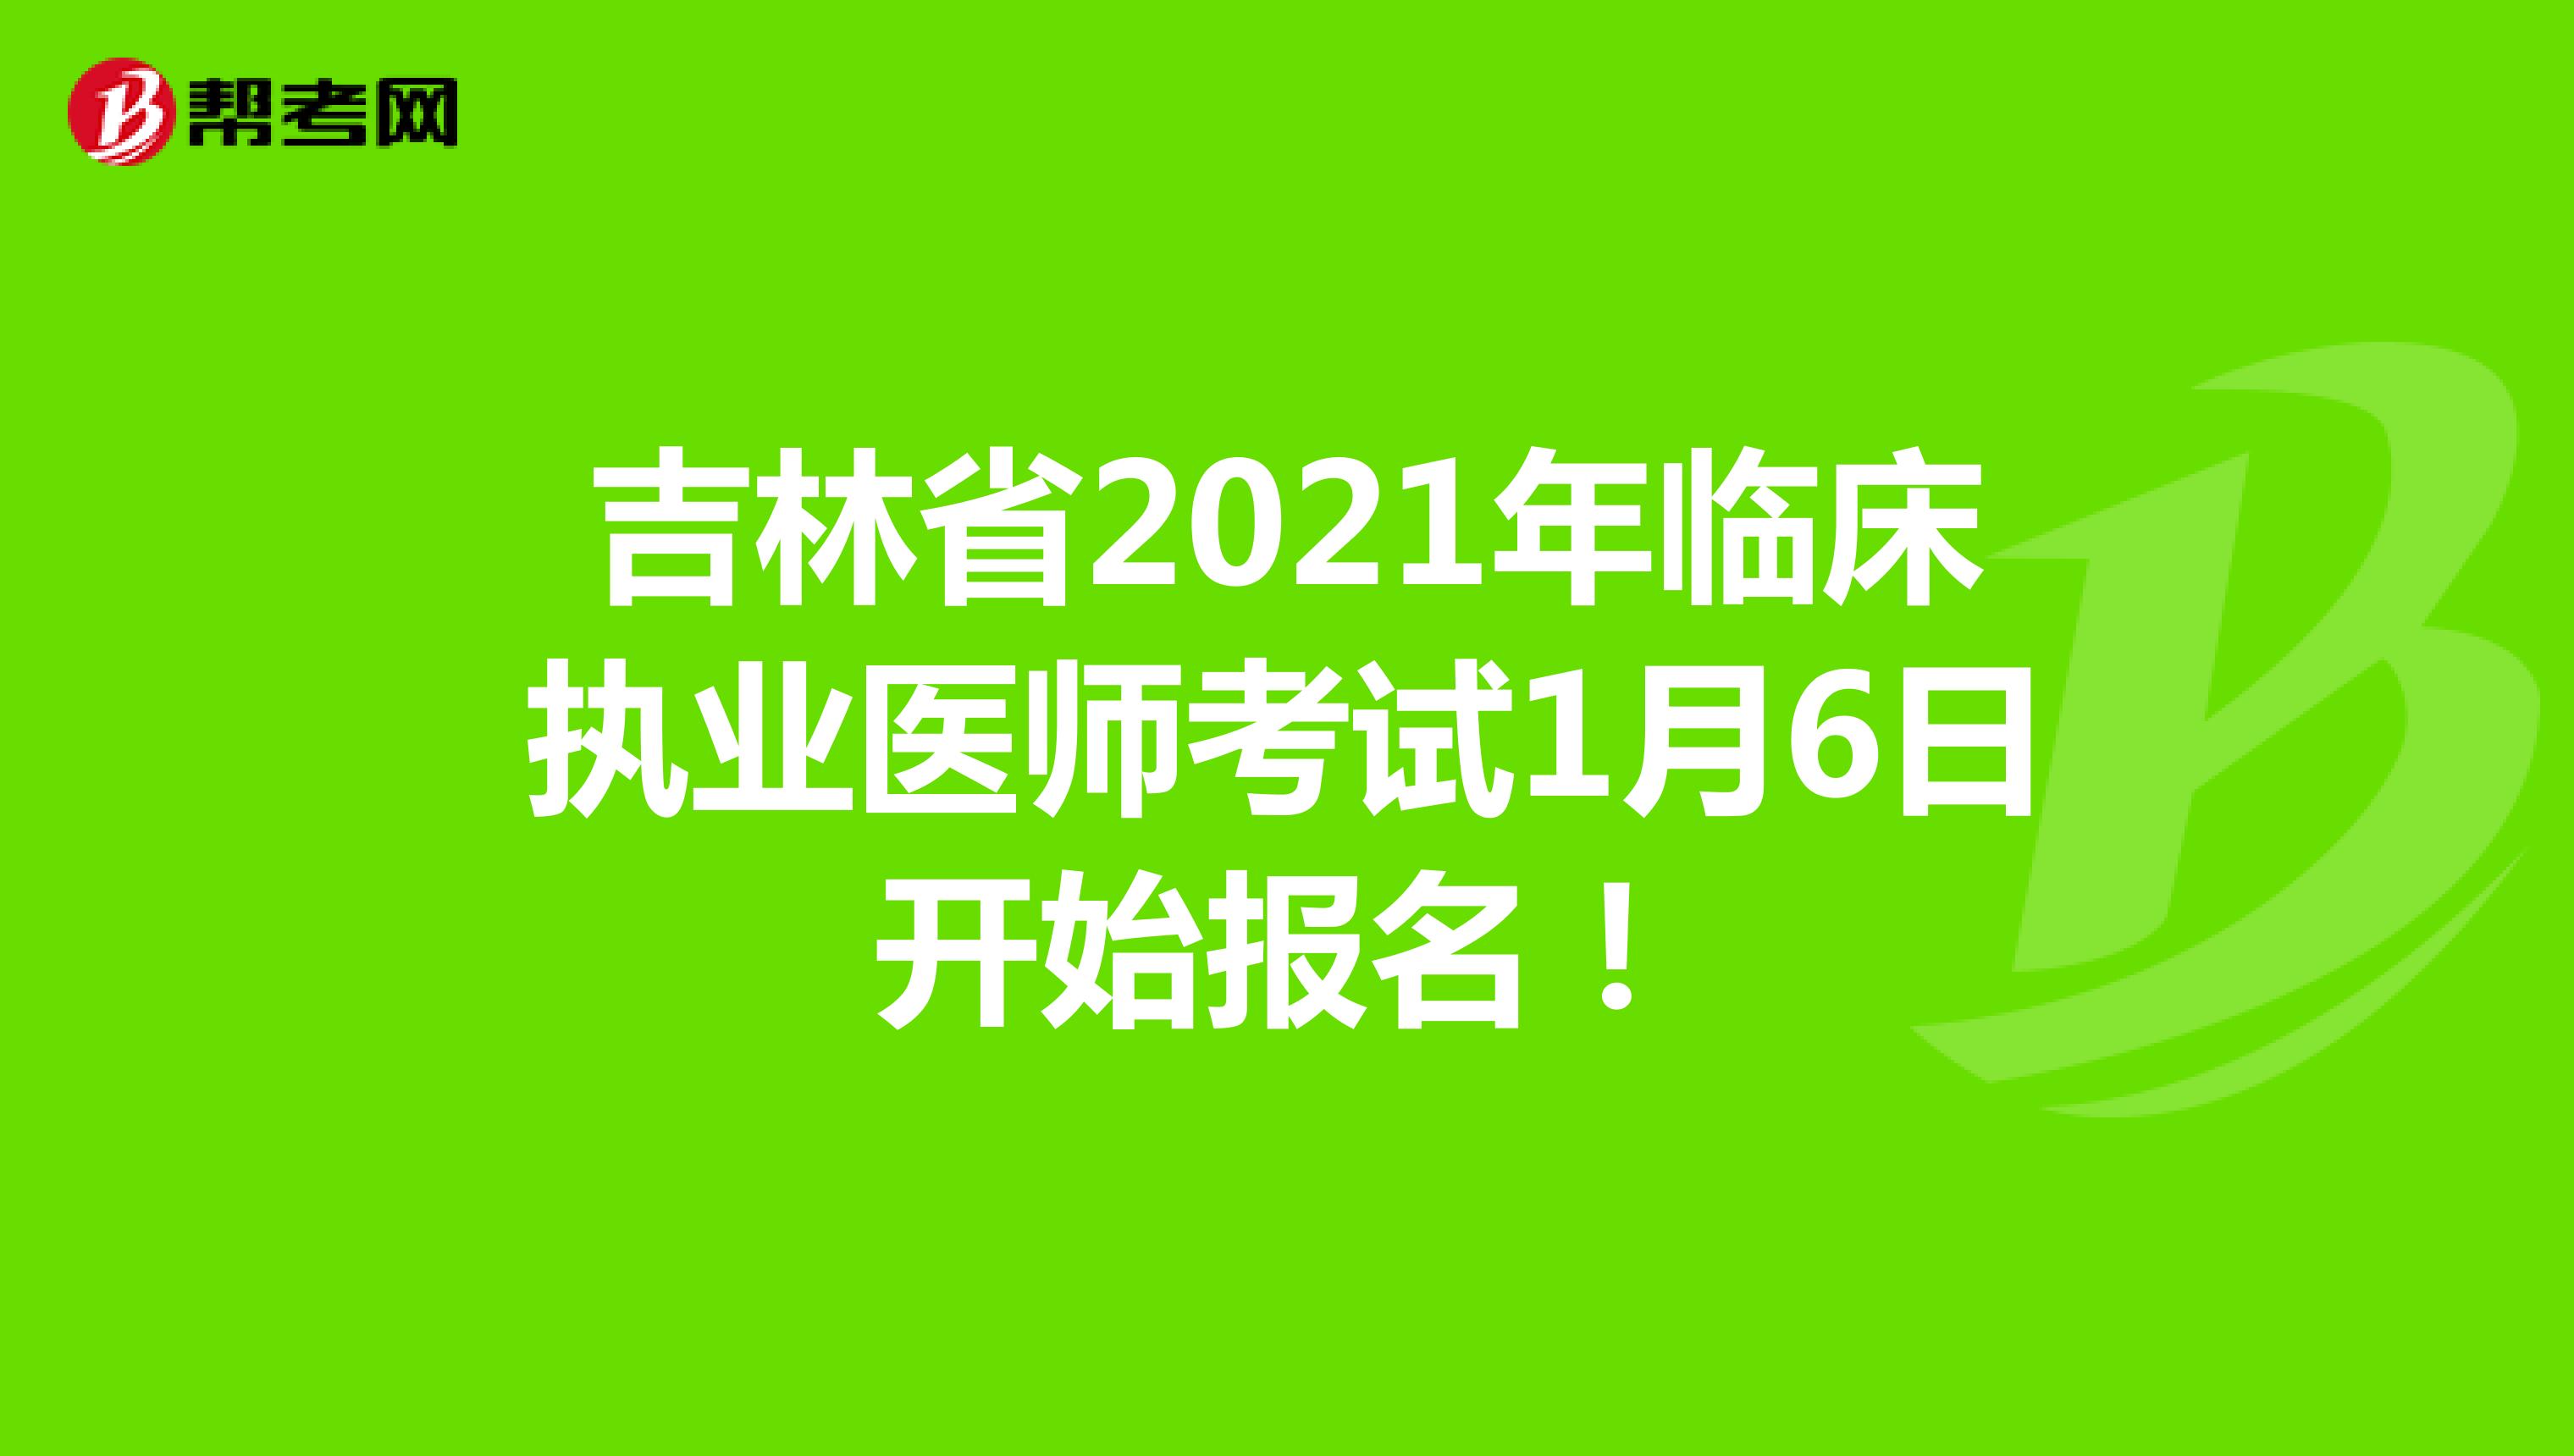 吉林省2021年临床执业医师考试1月6日开始报名！